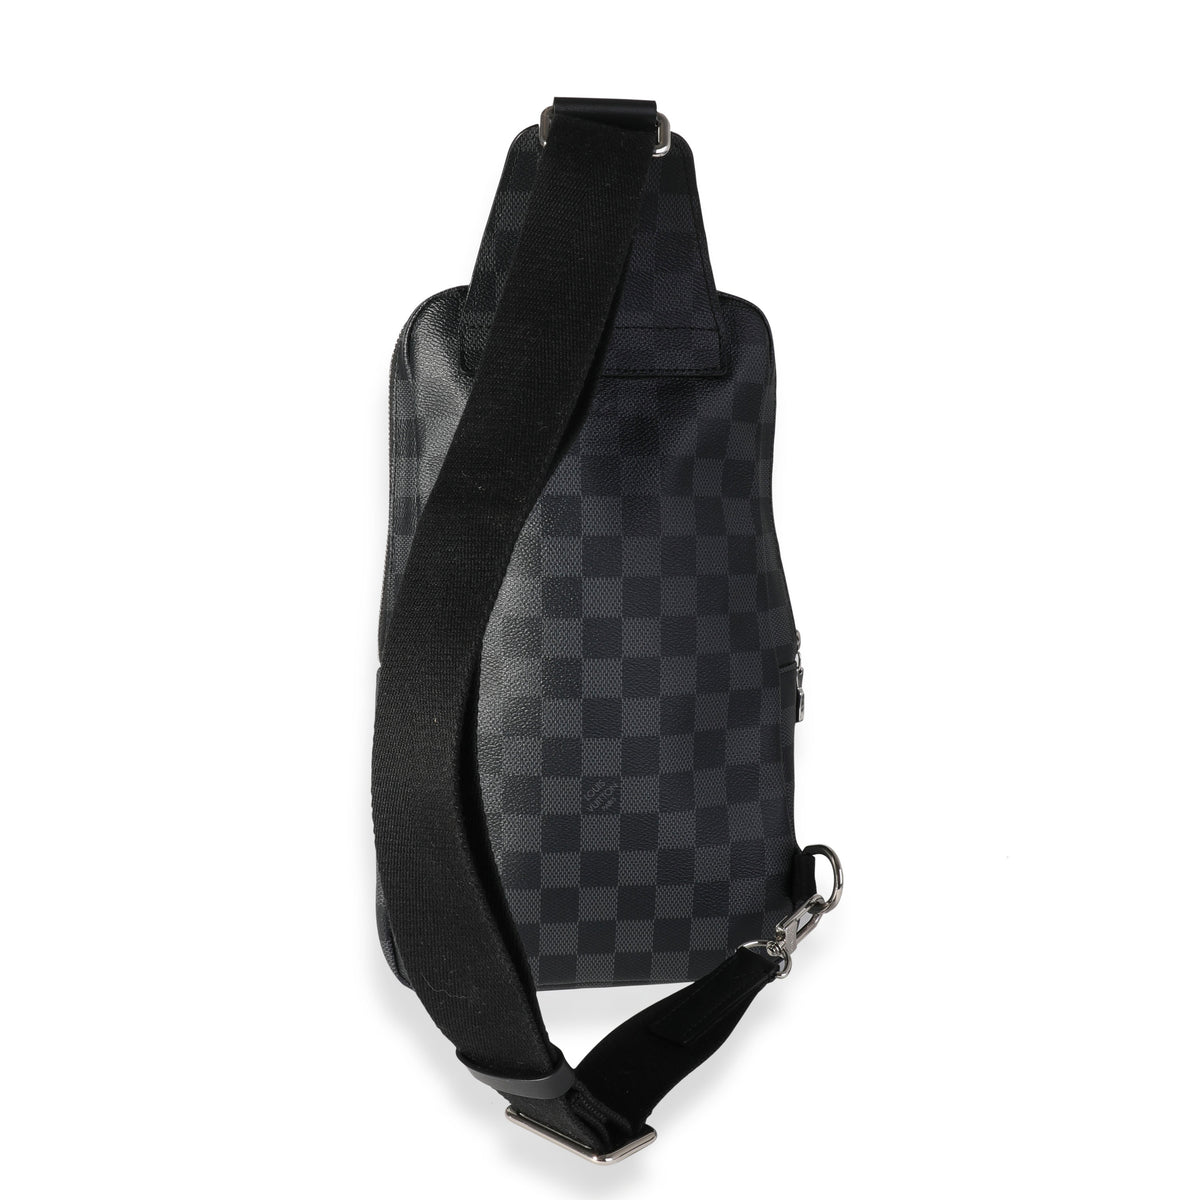 Louis Vuitton Avenue Sling Bag Damier GraphiteLouis Vuitton Avenue Sling  Bag Damier Graphite - OFour